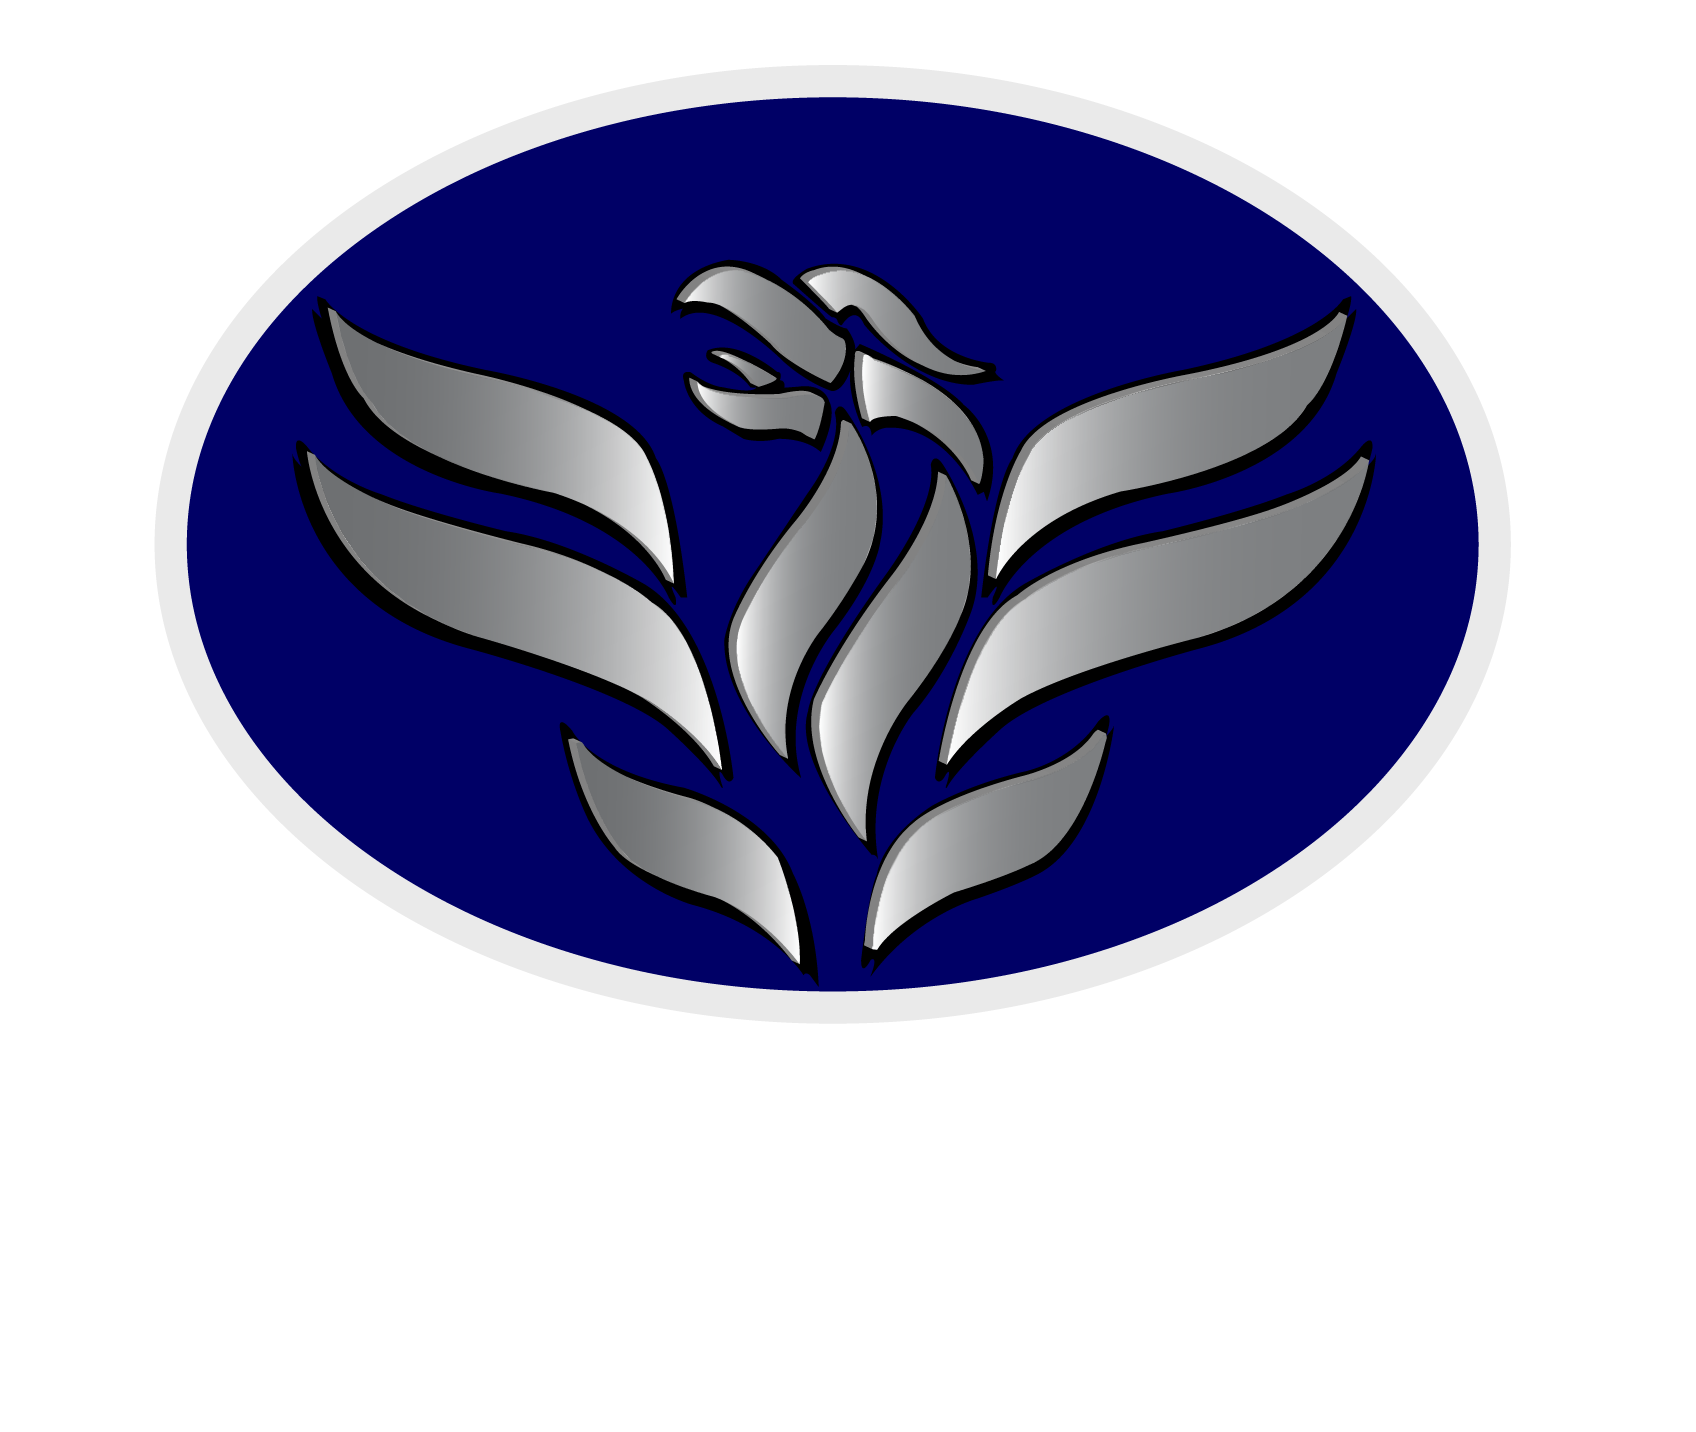 Phoenix Aircon & Plumbing Services